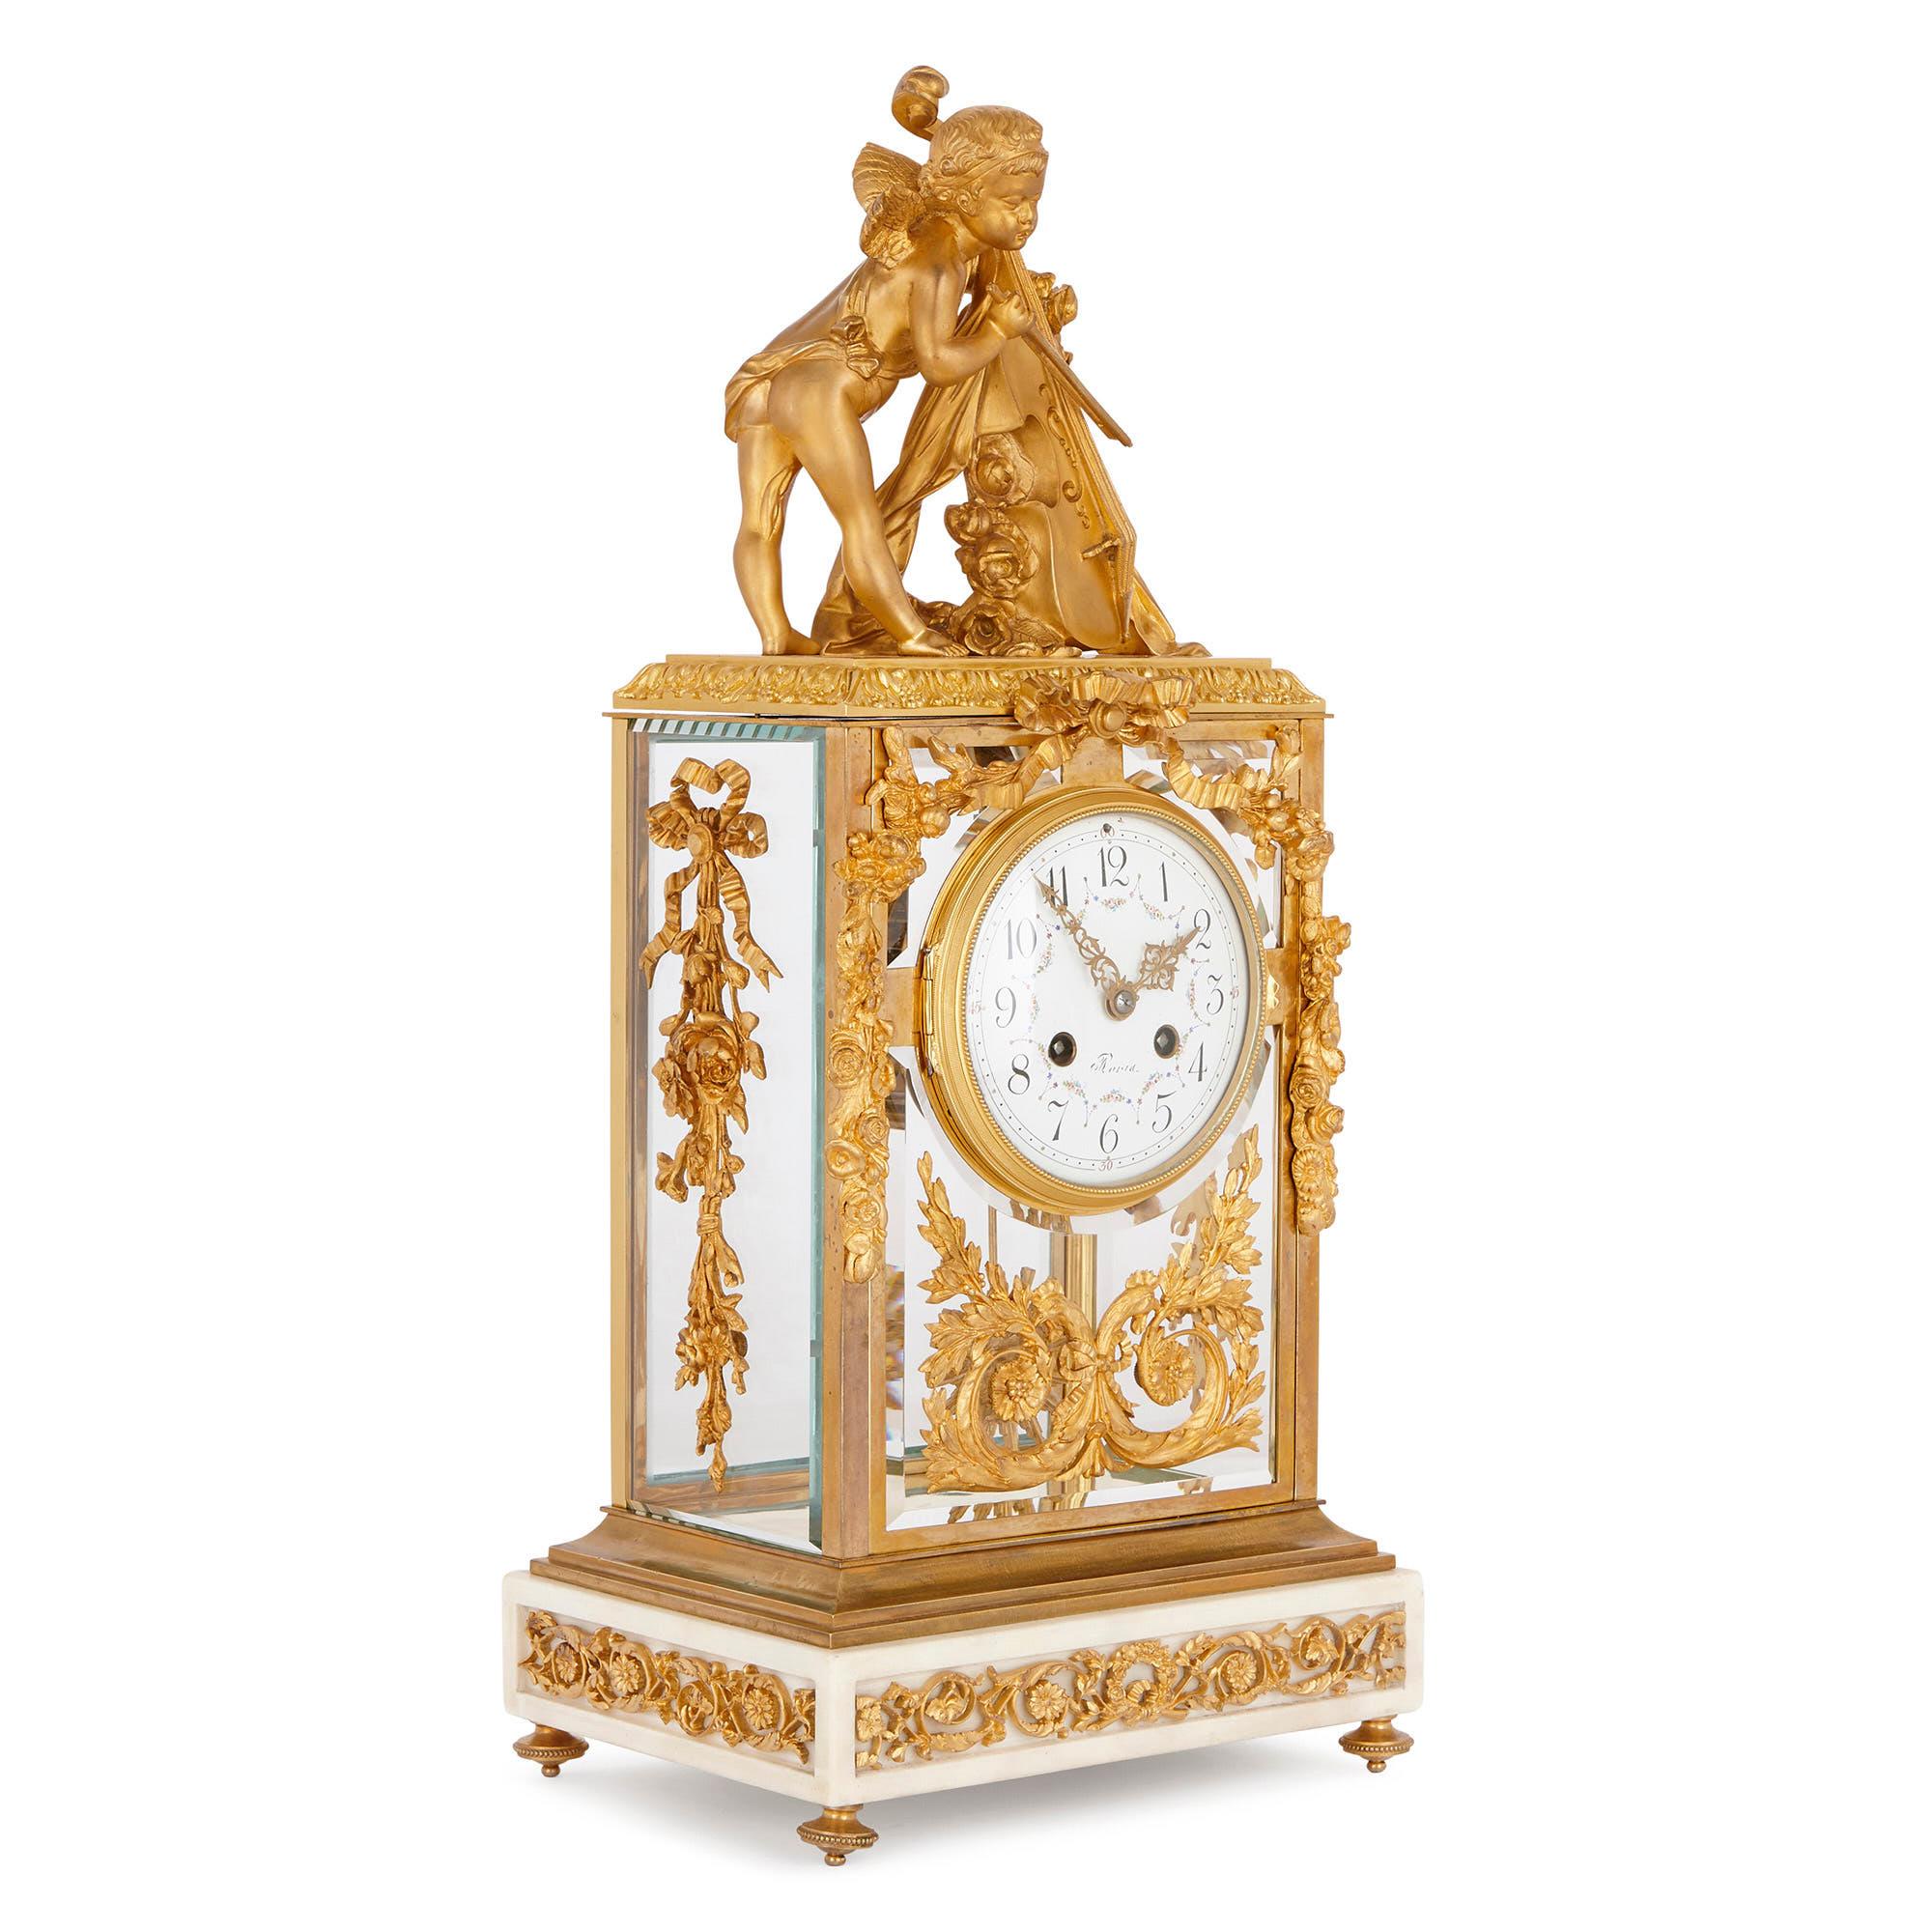 Cette horloge de cheminée française est conçue dans un élégant style néoclassique, inspiré des arts décoratifs de la période Louis XVI (1754-1793). Cette horloge sera magnifique placée sur une cheminée ou à un autre endroit bien en vue dans un